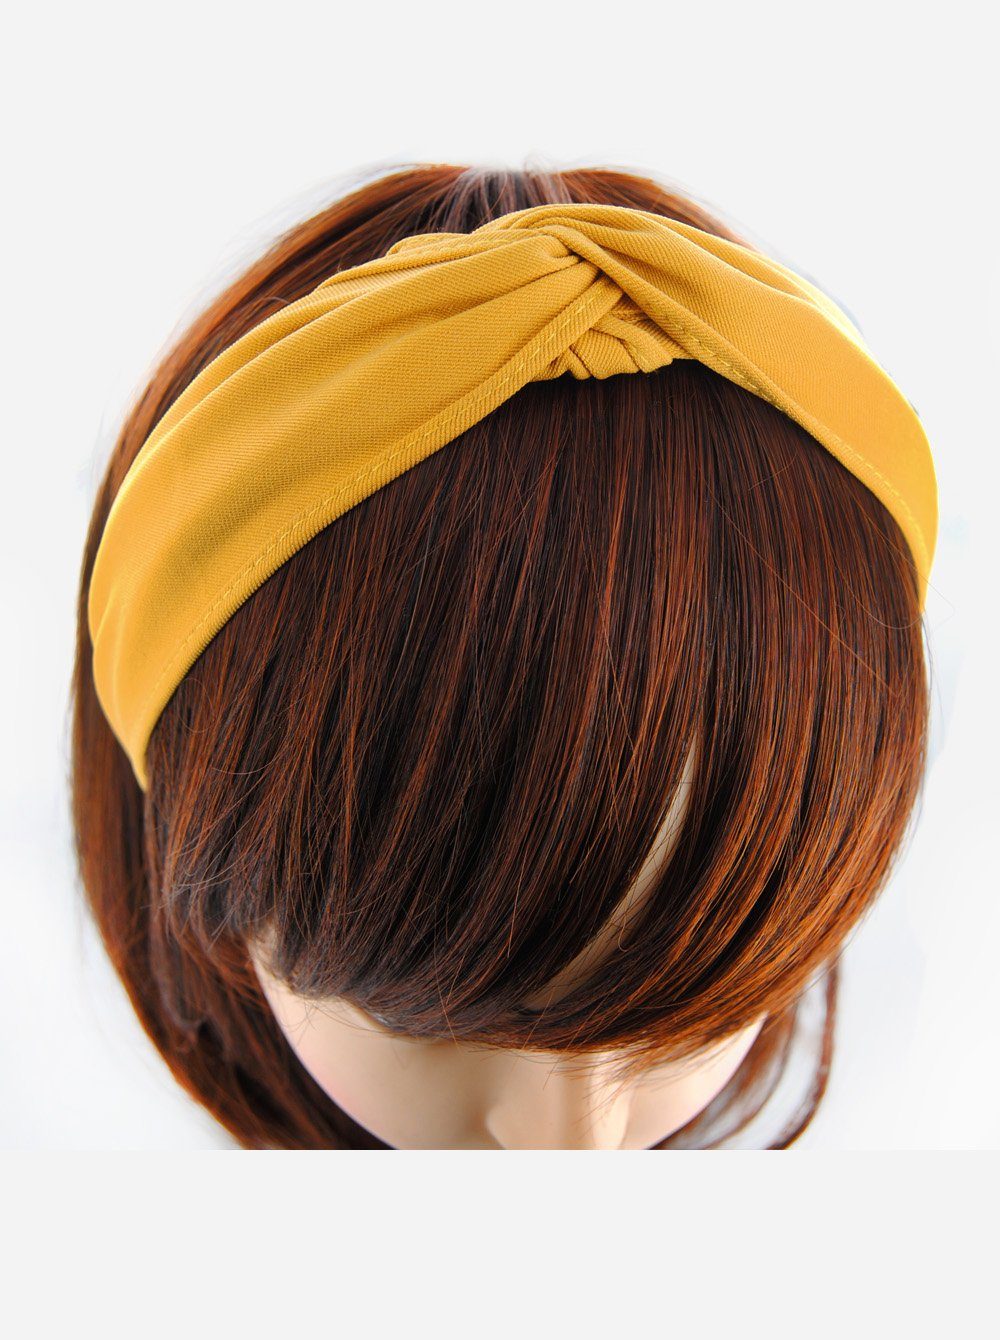 axy Haarreif Breiter Haarreif mit raffinierten Knoten, Vintage Klassik-Look Damen Haareifen Haarband Gelb